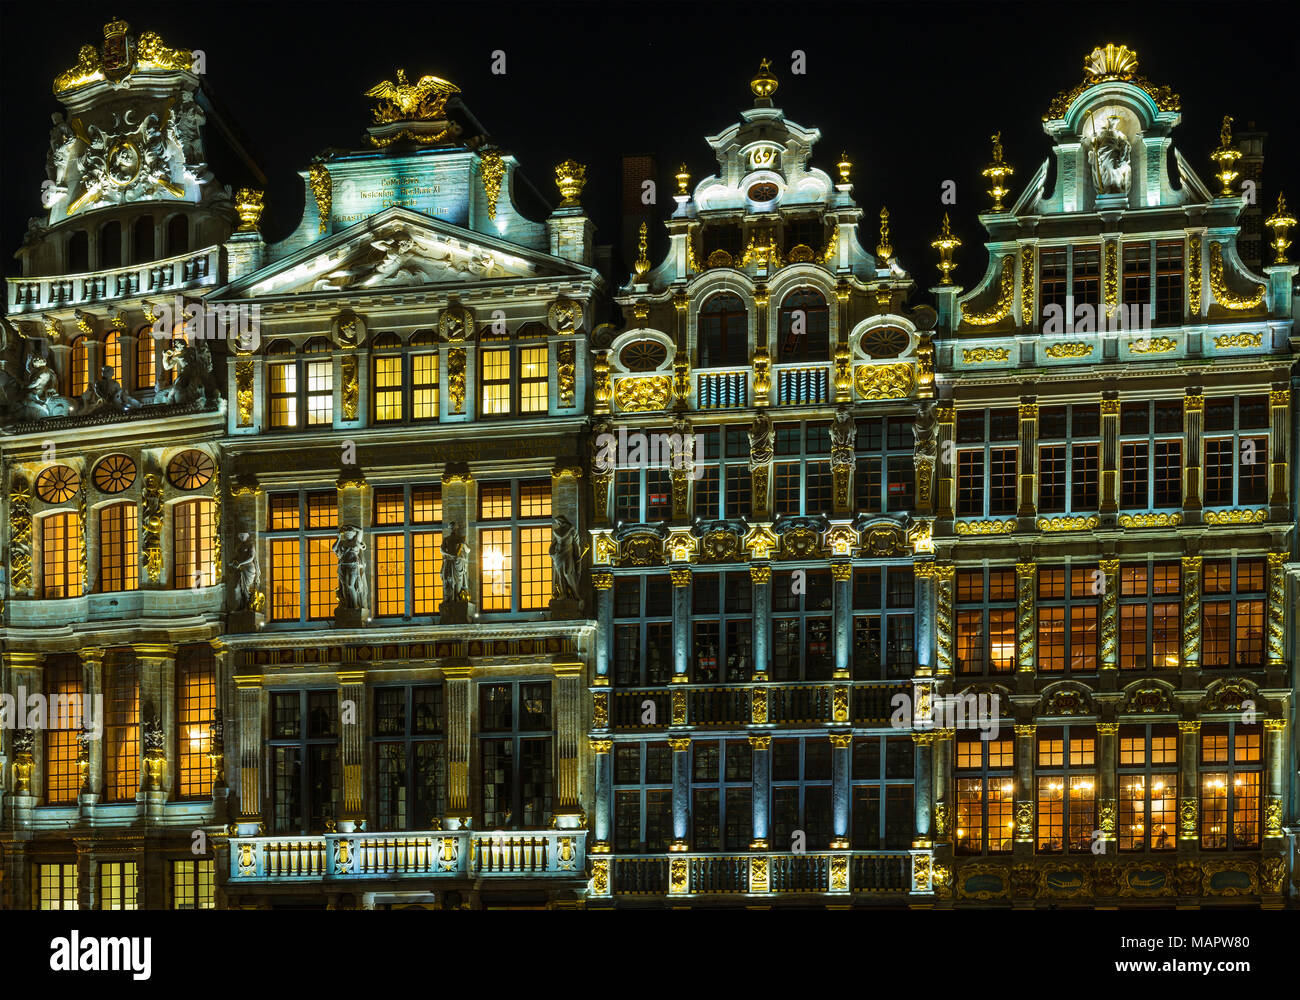 Façades de maisons de guilde de la Grand Place ou place principale de Bruxelles illuminée la nuit en style italien baroque avec des influences flamand, Belgique. Banque D'Images